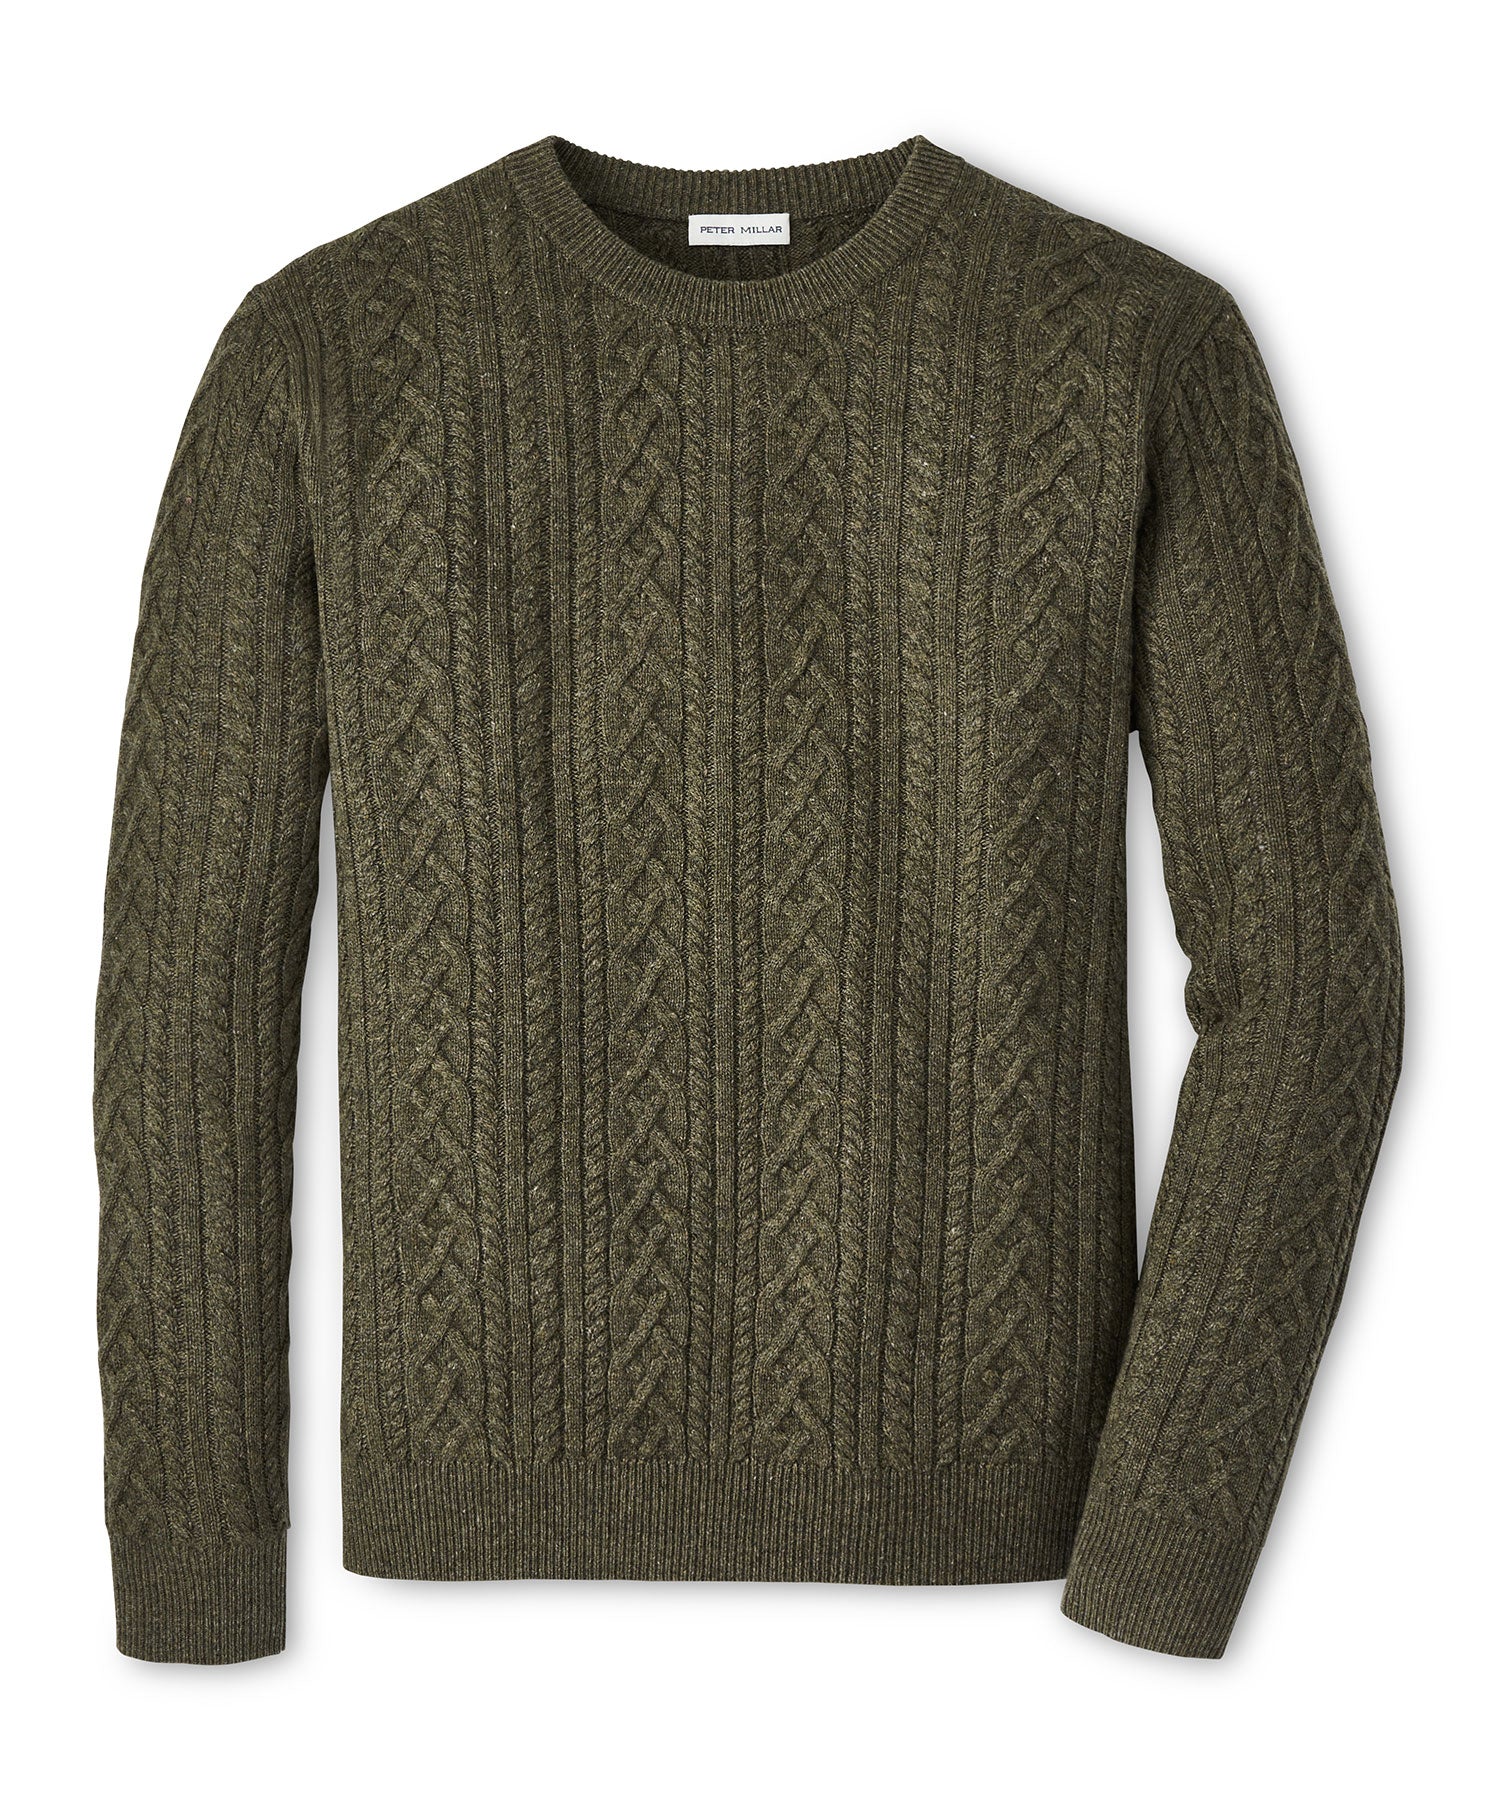 Peter Millar Ridge Cable Crewneck Sweater